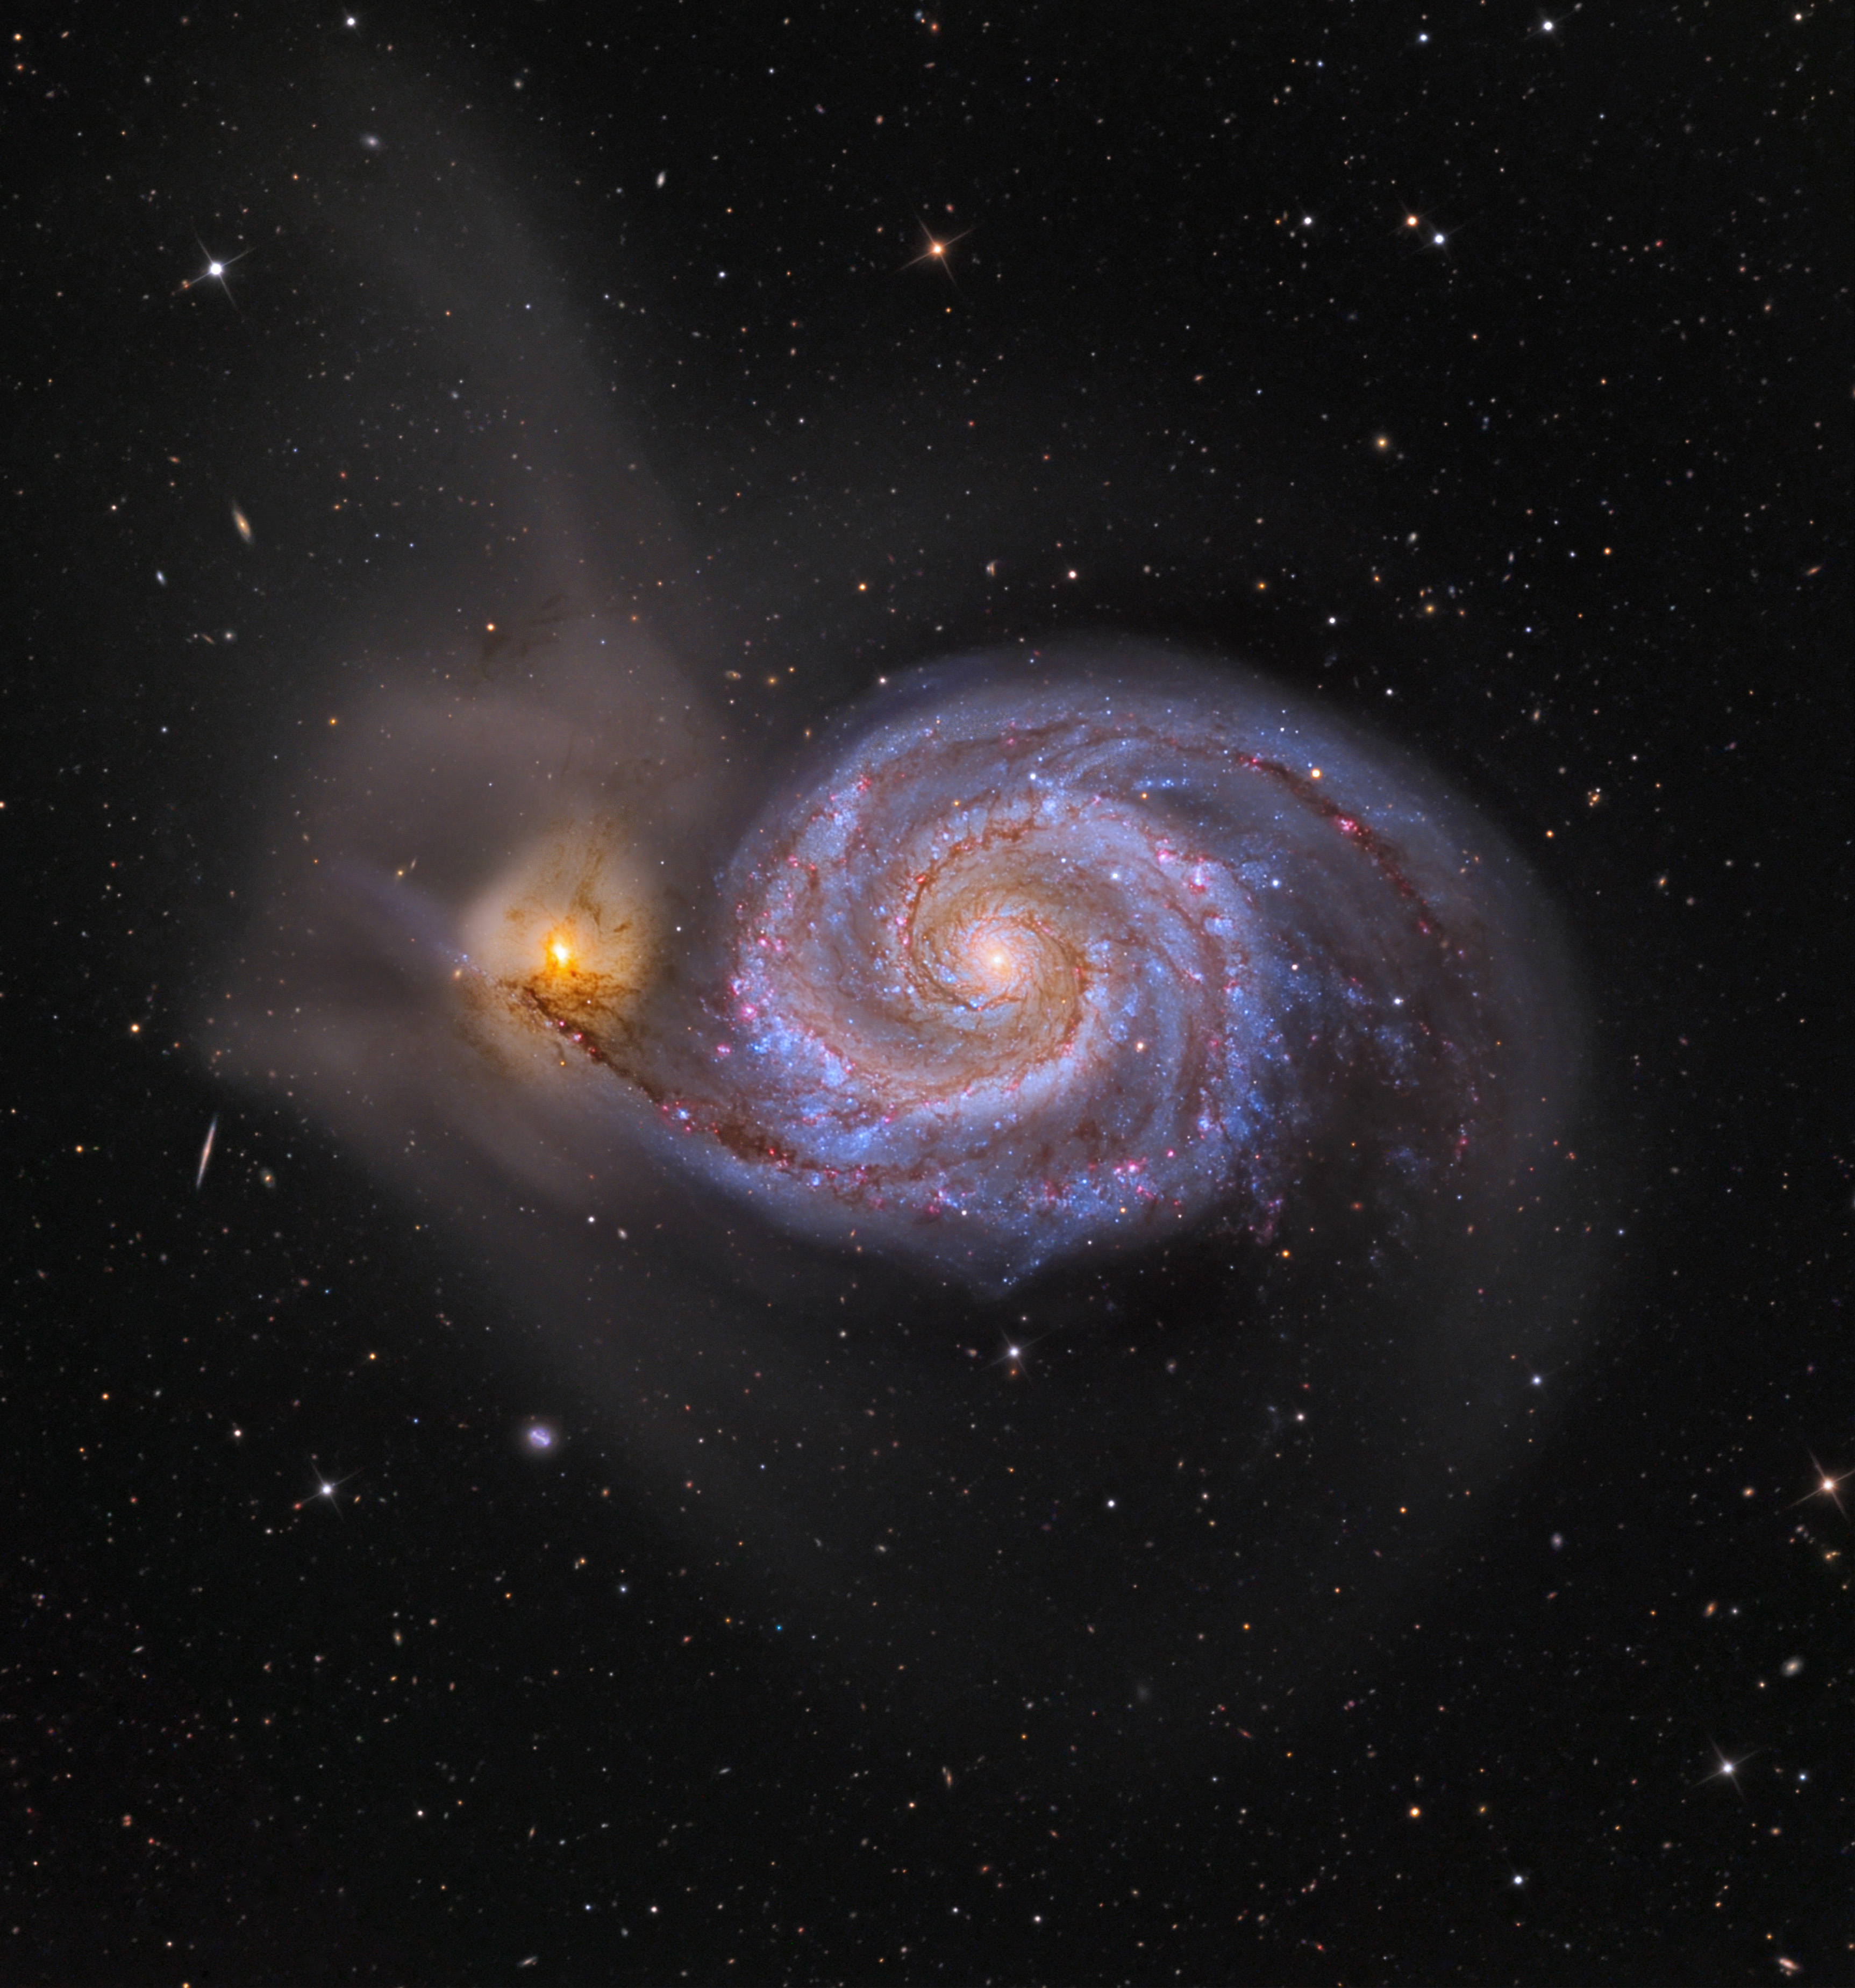 Гигантская звездная система. М51 водоворот. Галактика водоворот м51. Спиральная Галактика m51. M51 Whirlpool Galaxy.